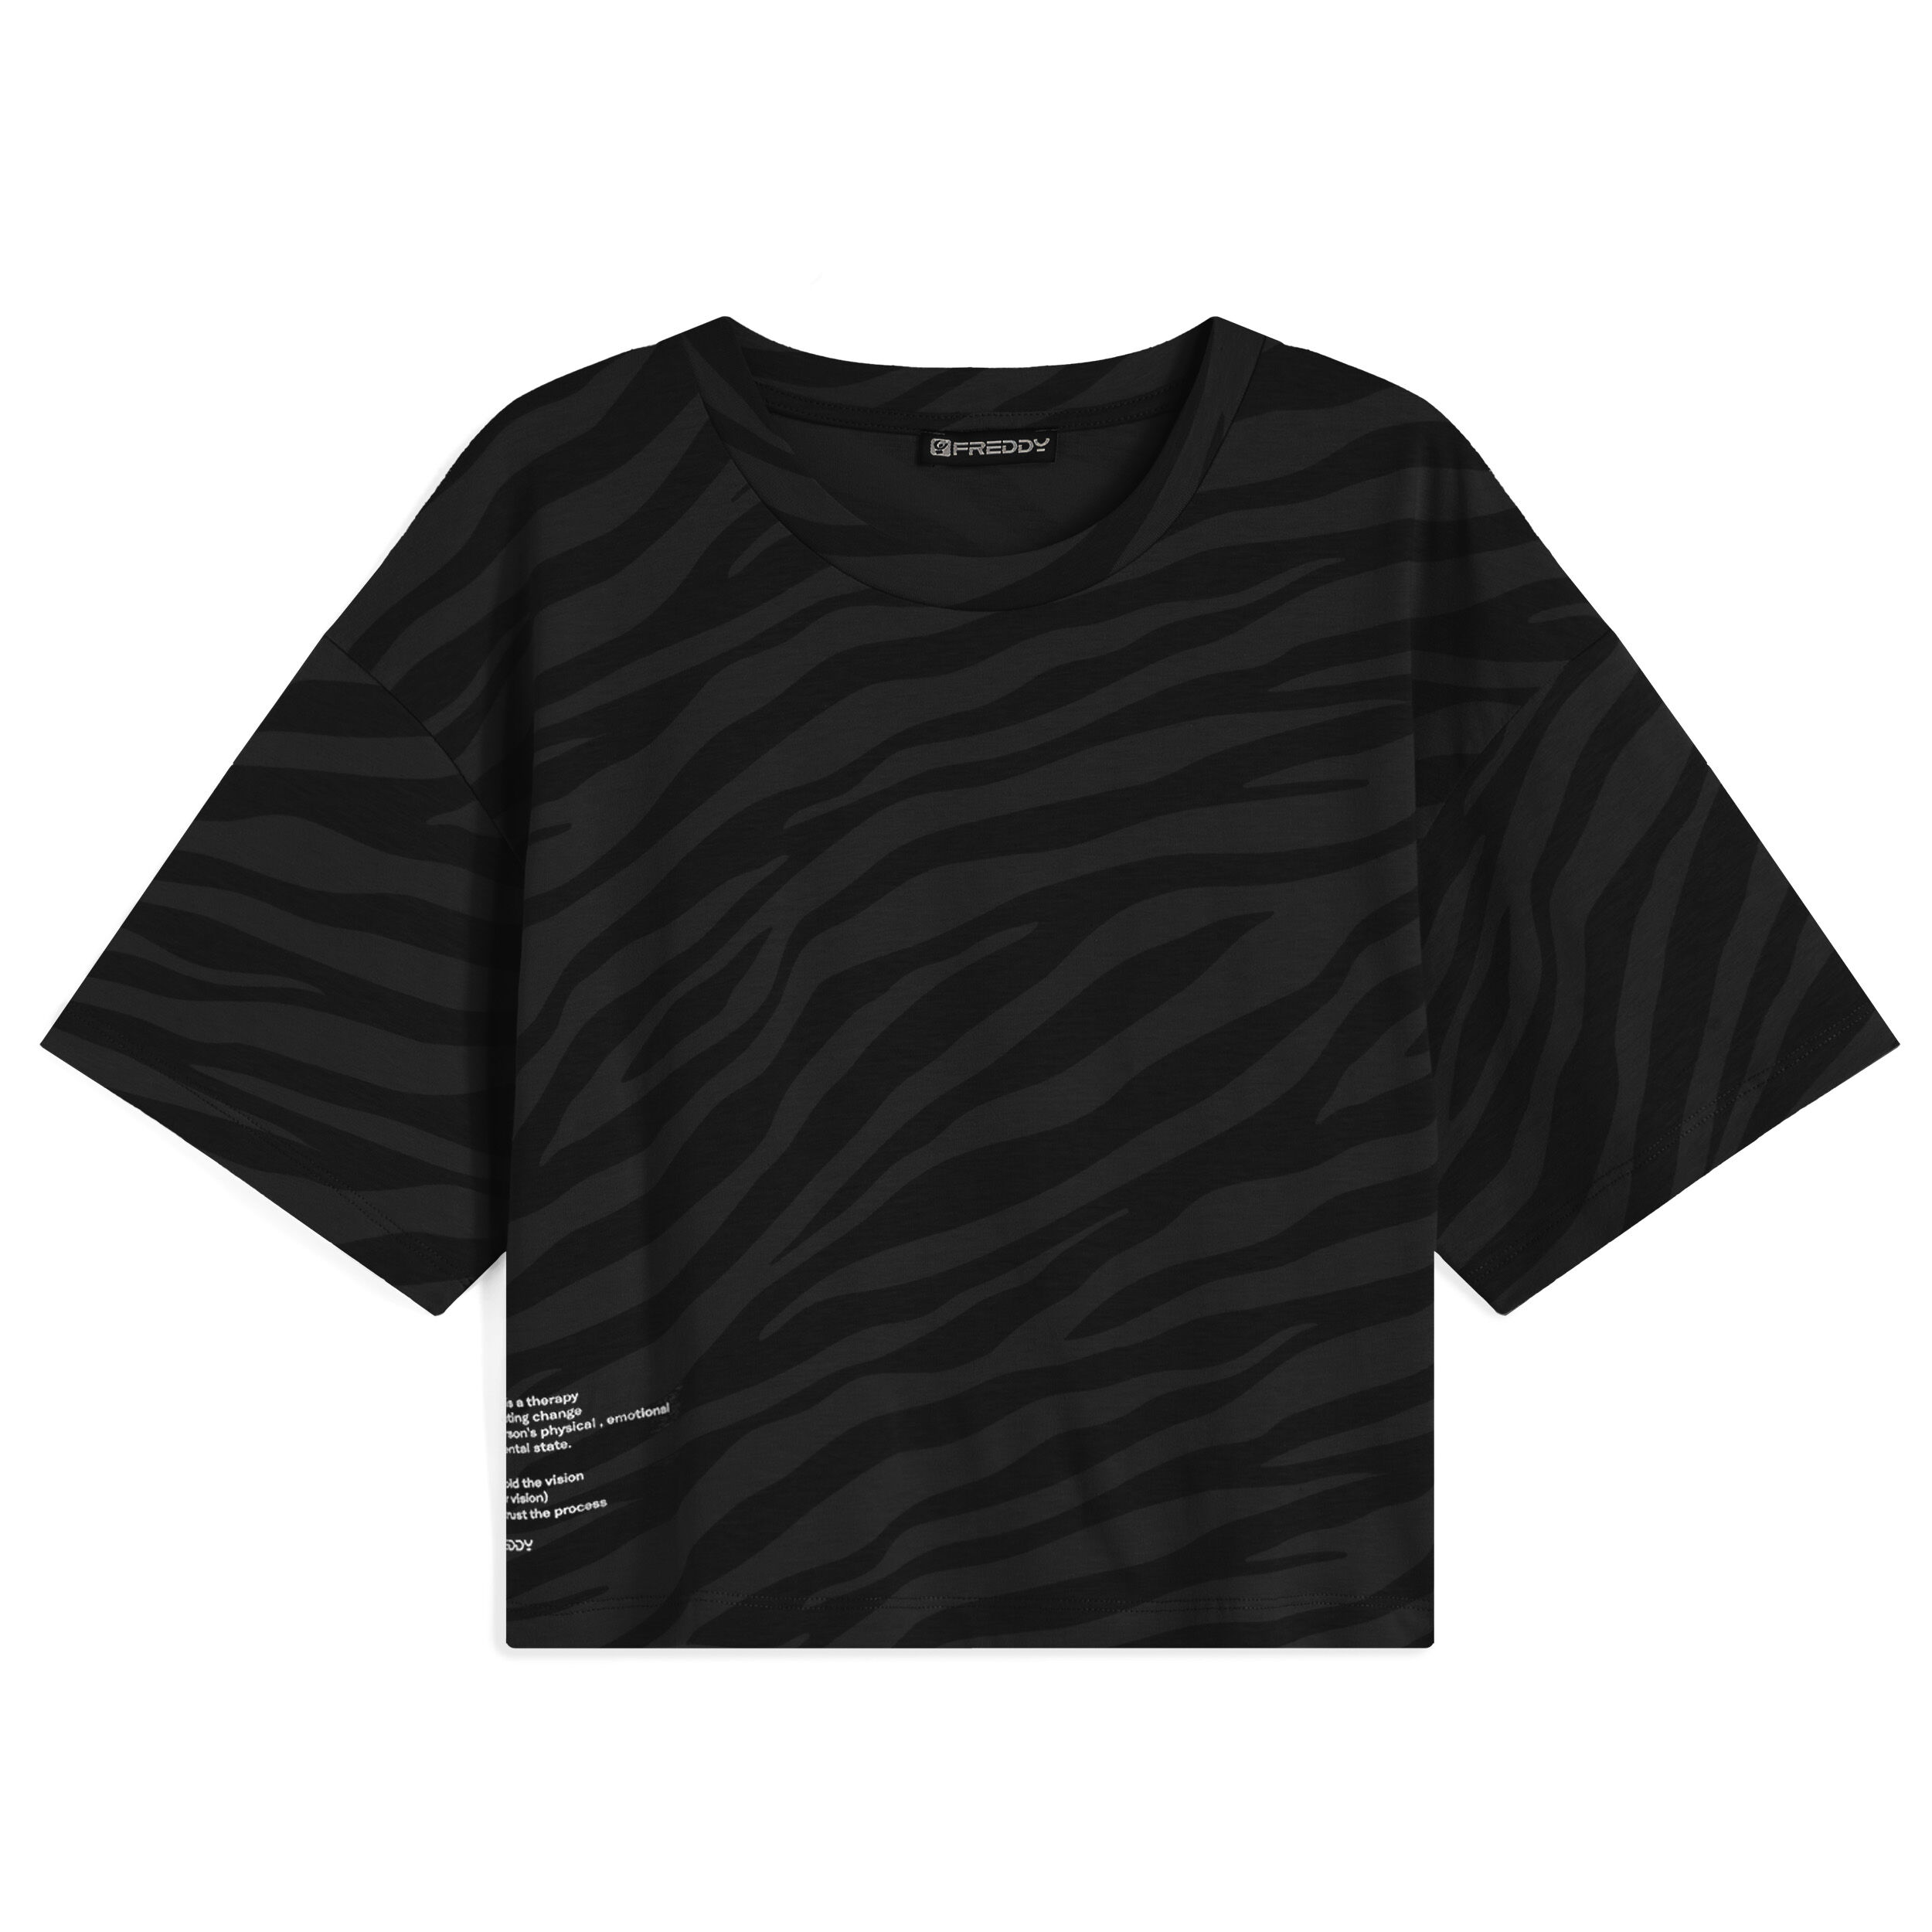 Freddy T-shirt corta da donna in jersey stampa zebrata in tono Zebra Animalier - Black Donna Extra Small